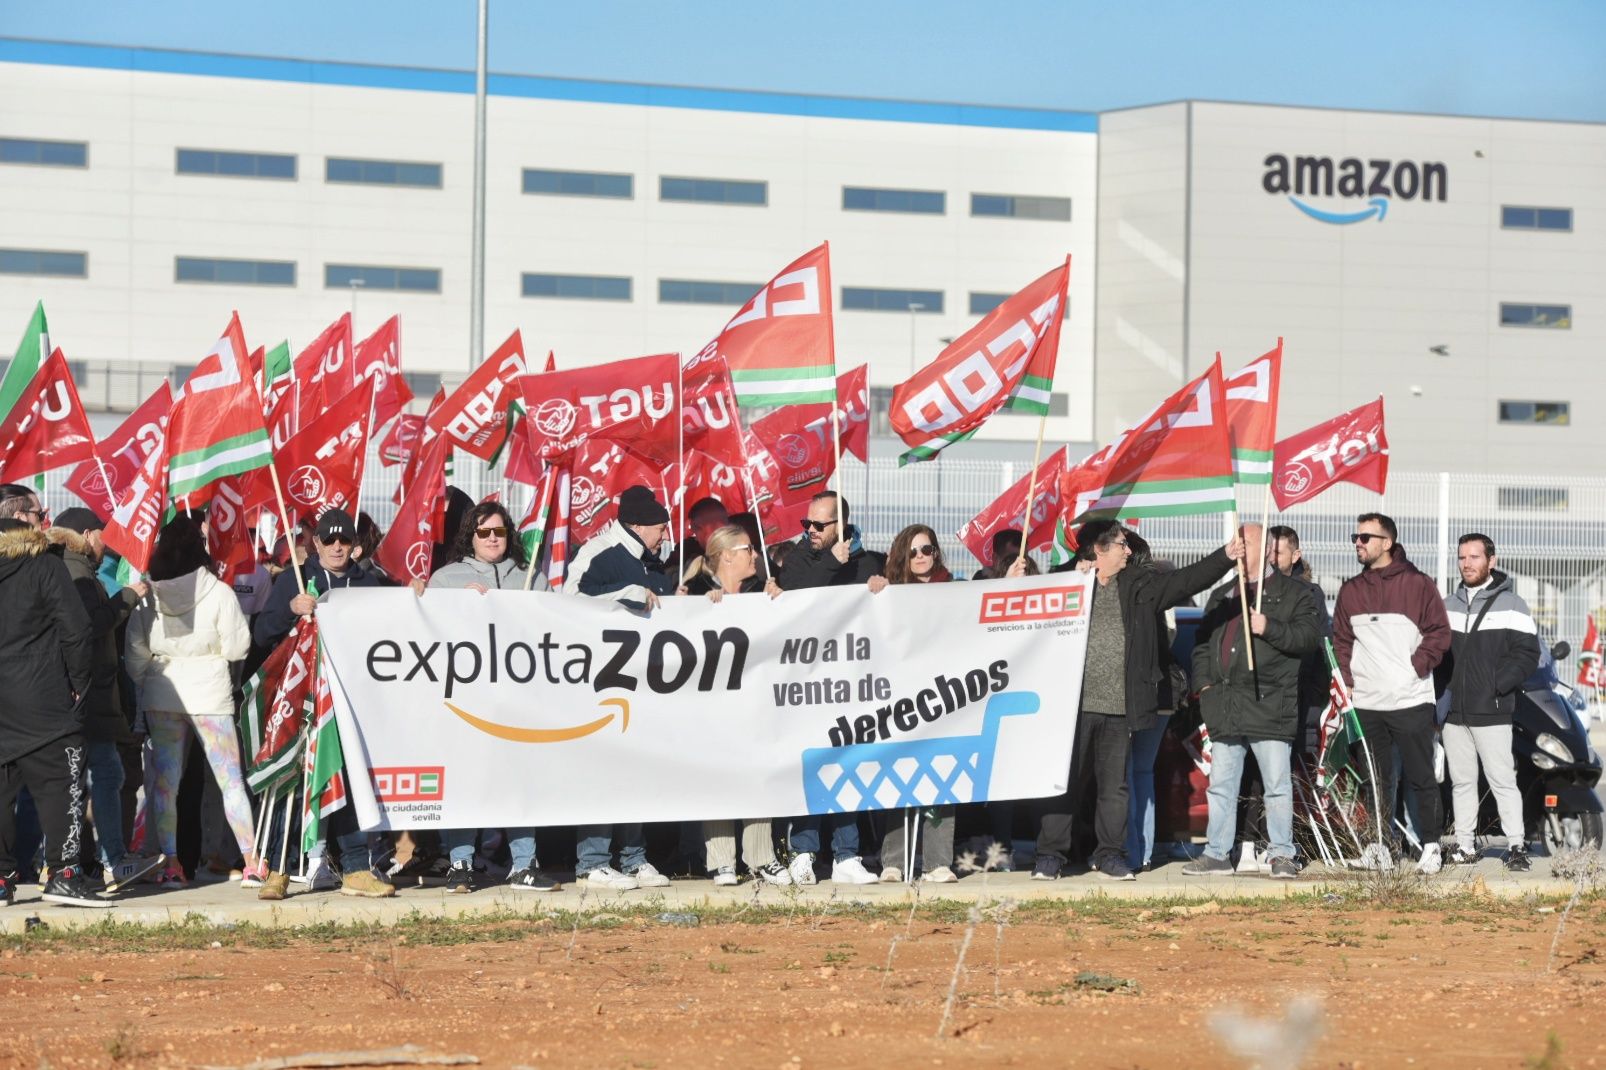 Protestas Amazon Sevilla 1